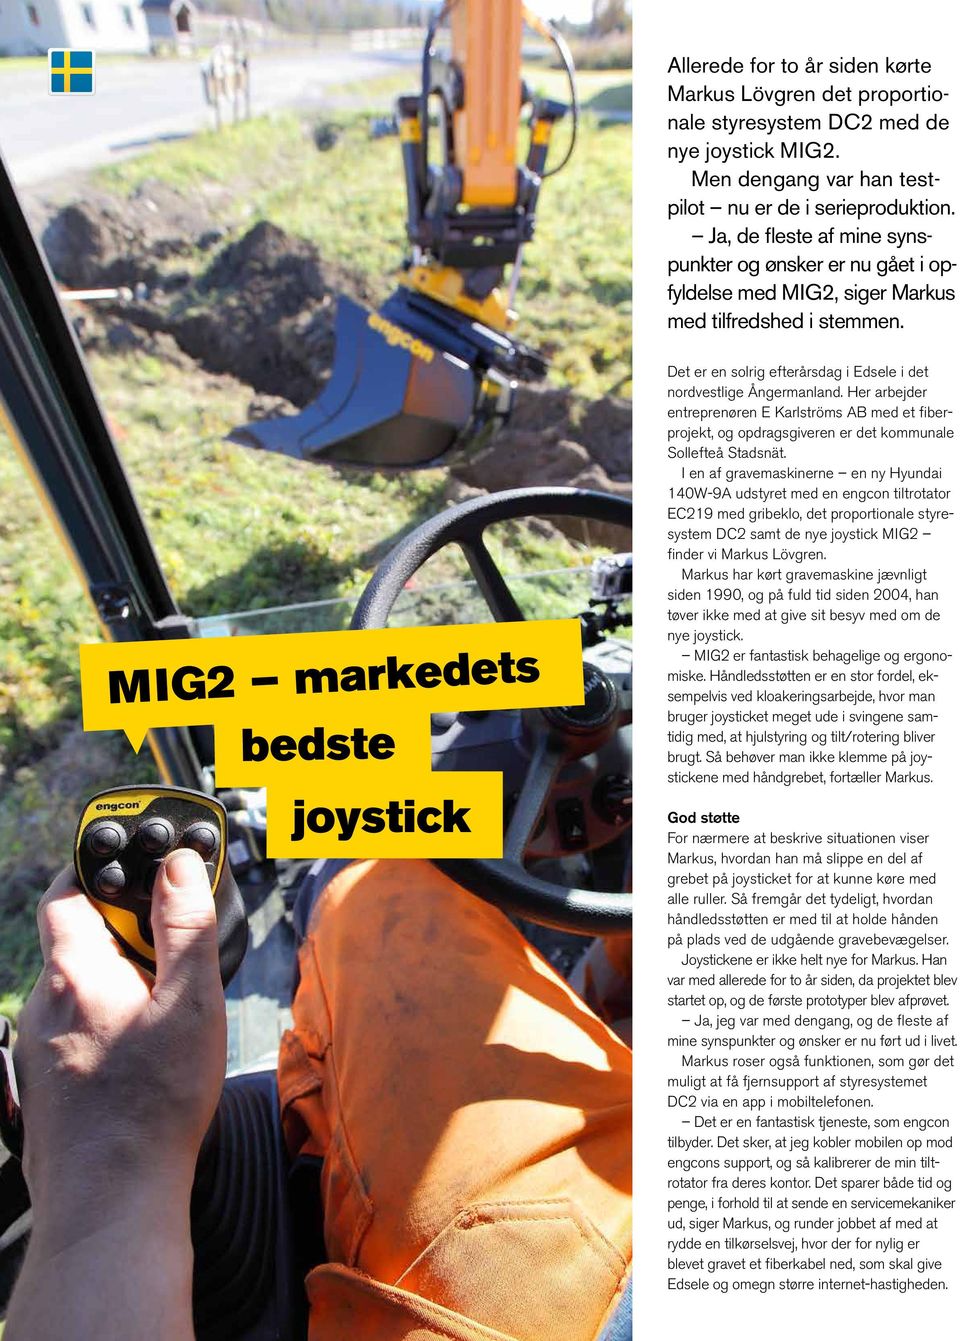 MIG2 markedets bedste joystick Det er en solrig efterårsdag i Edsele i det nordvestlige Ångermanland.